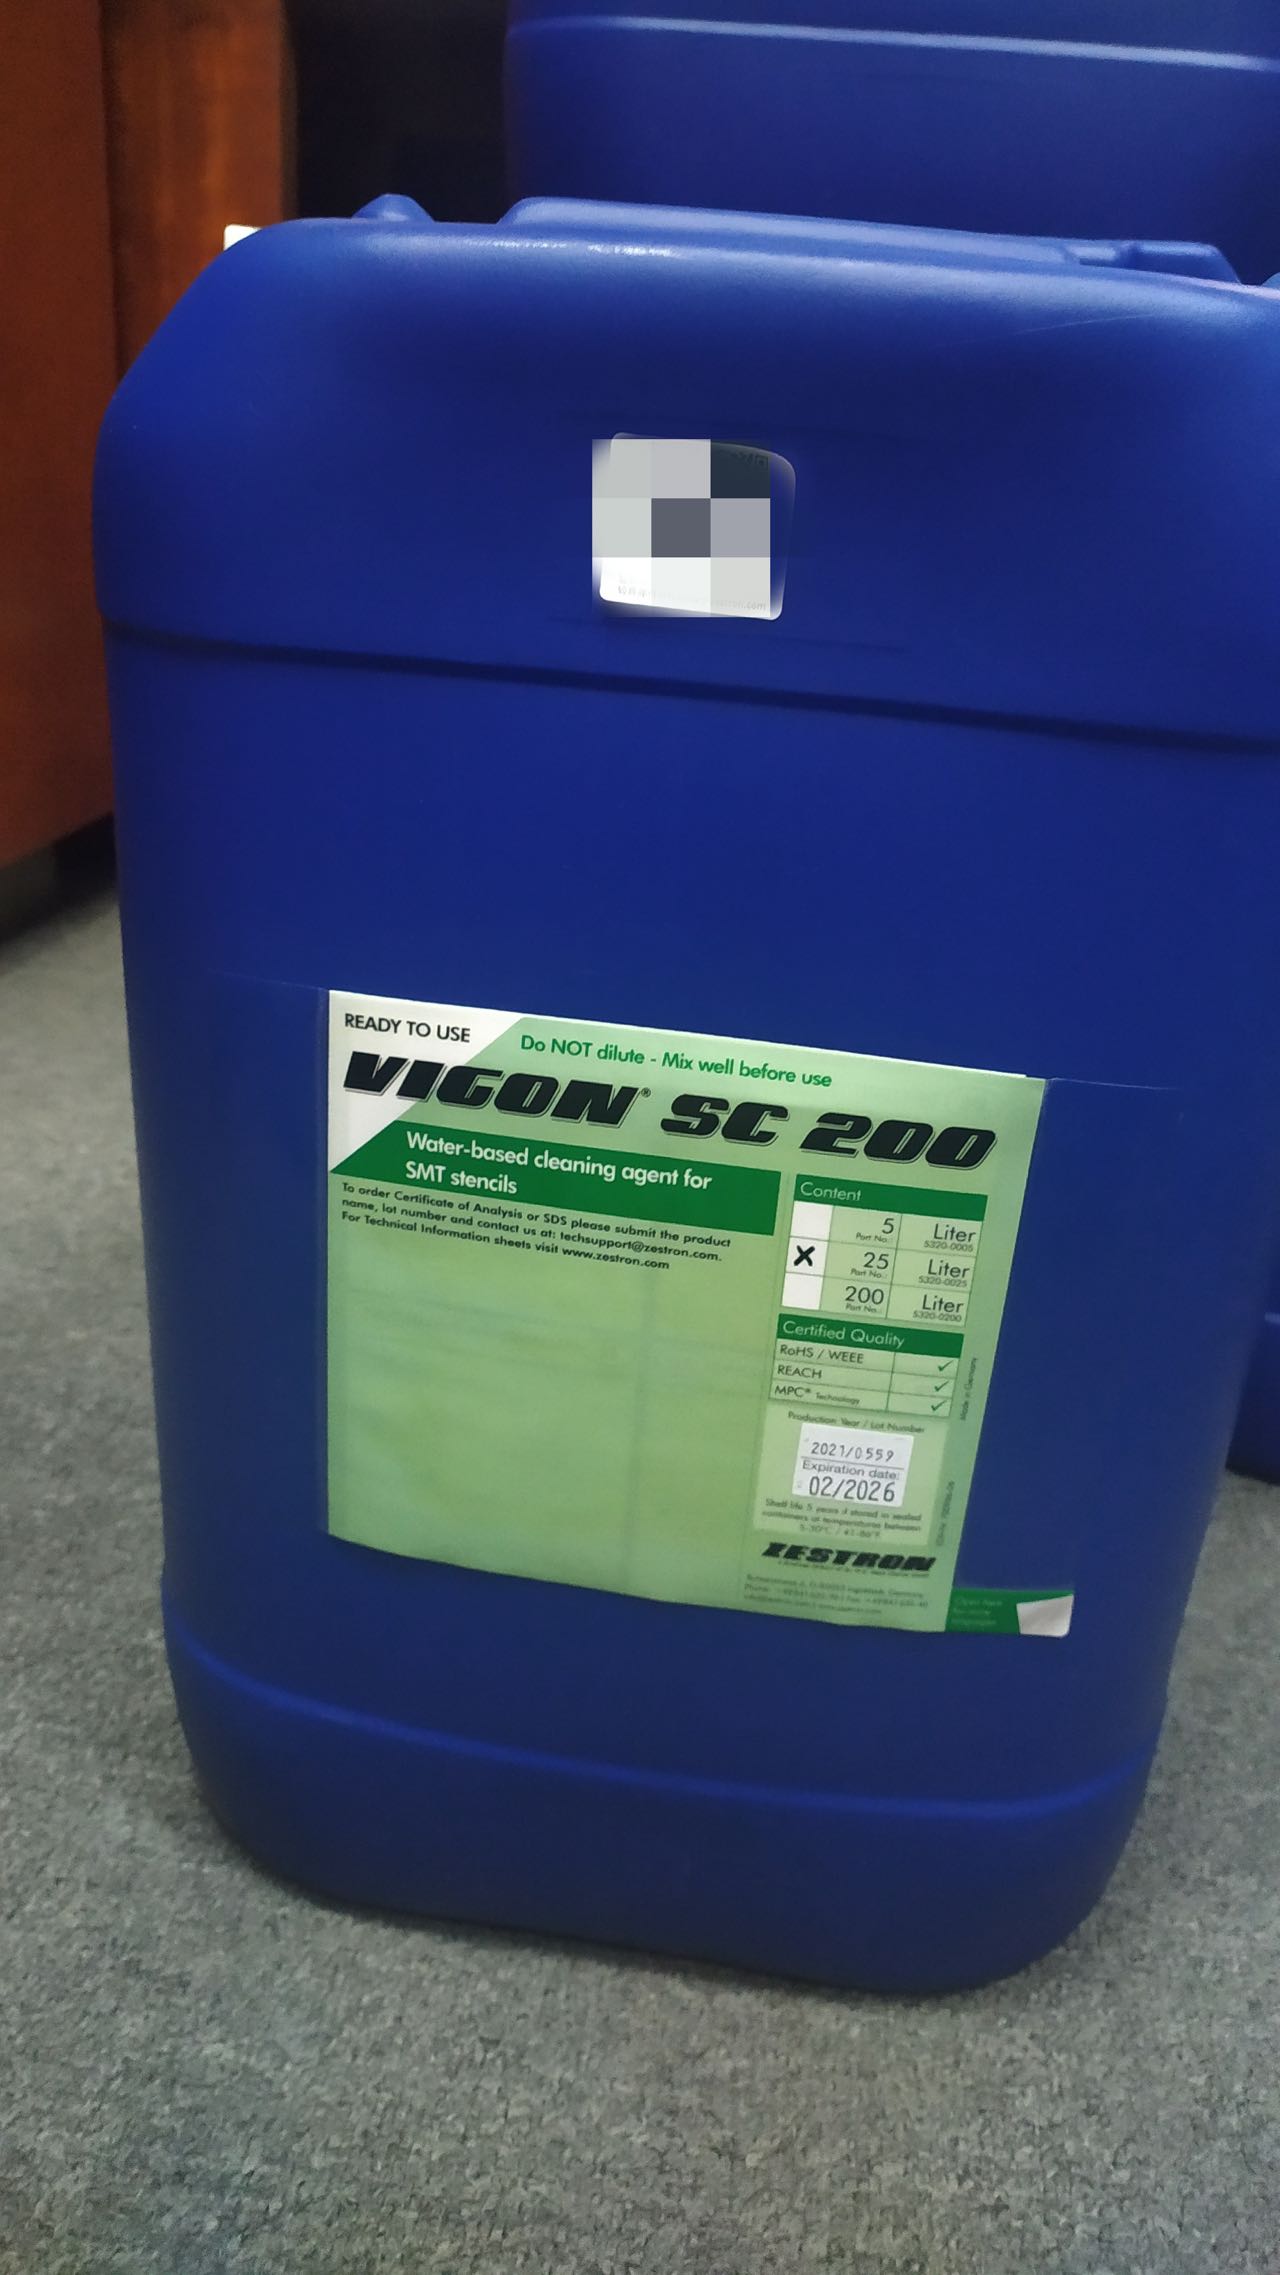 ZESTRON VigonSC200 德国洁创清洗剂清除焊膏和松香残留物的水基网板清洗剂